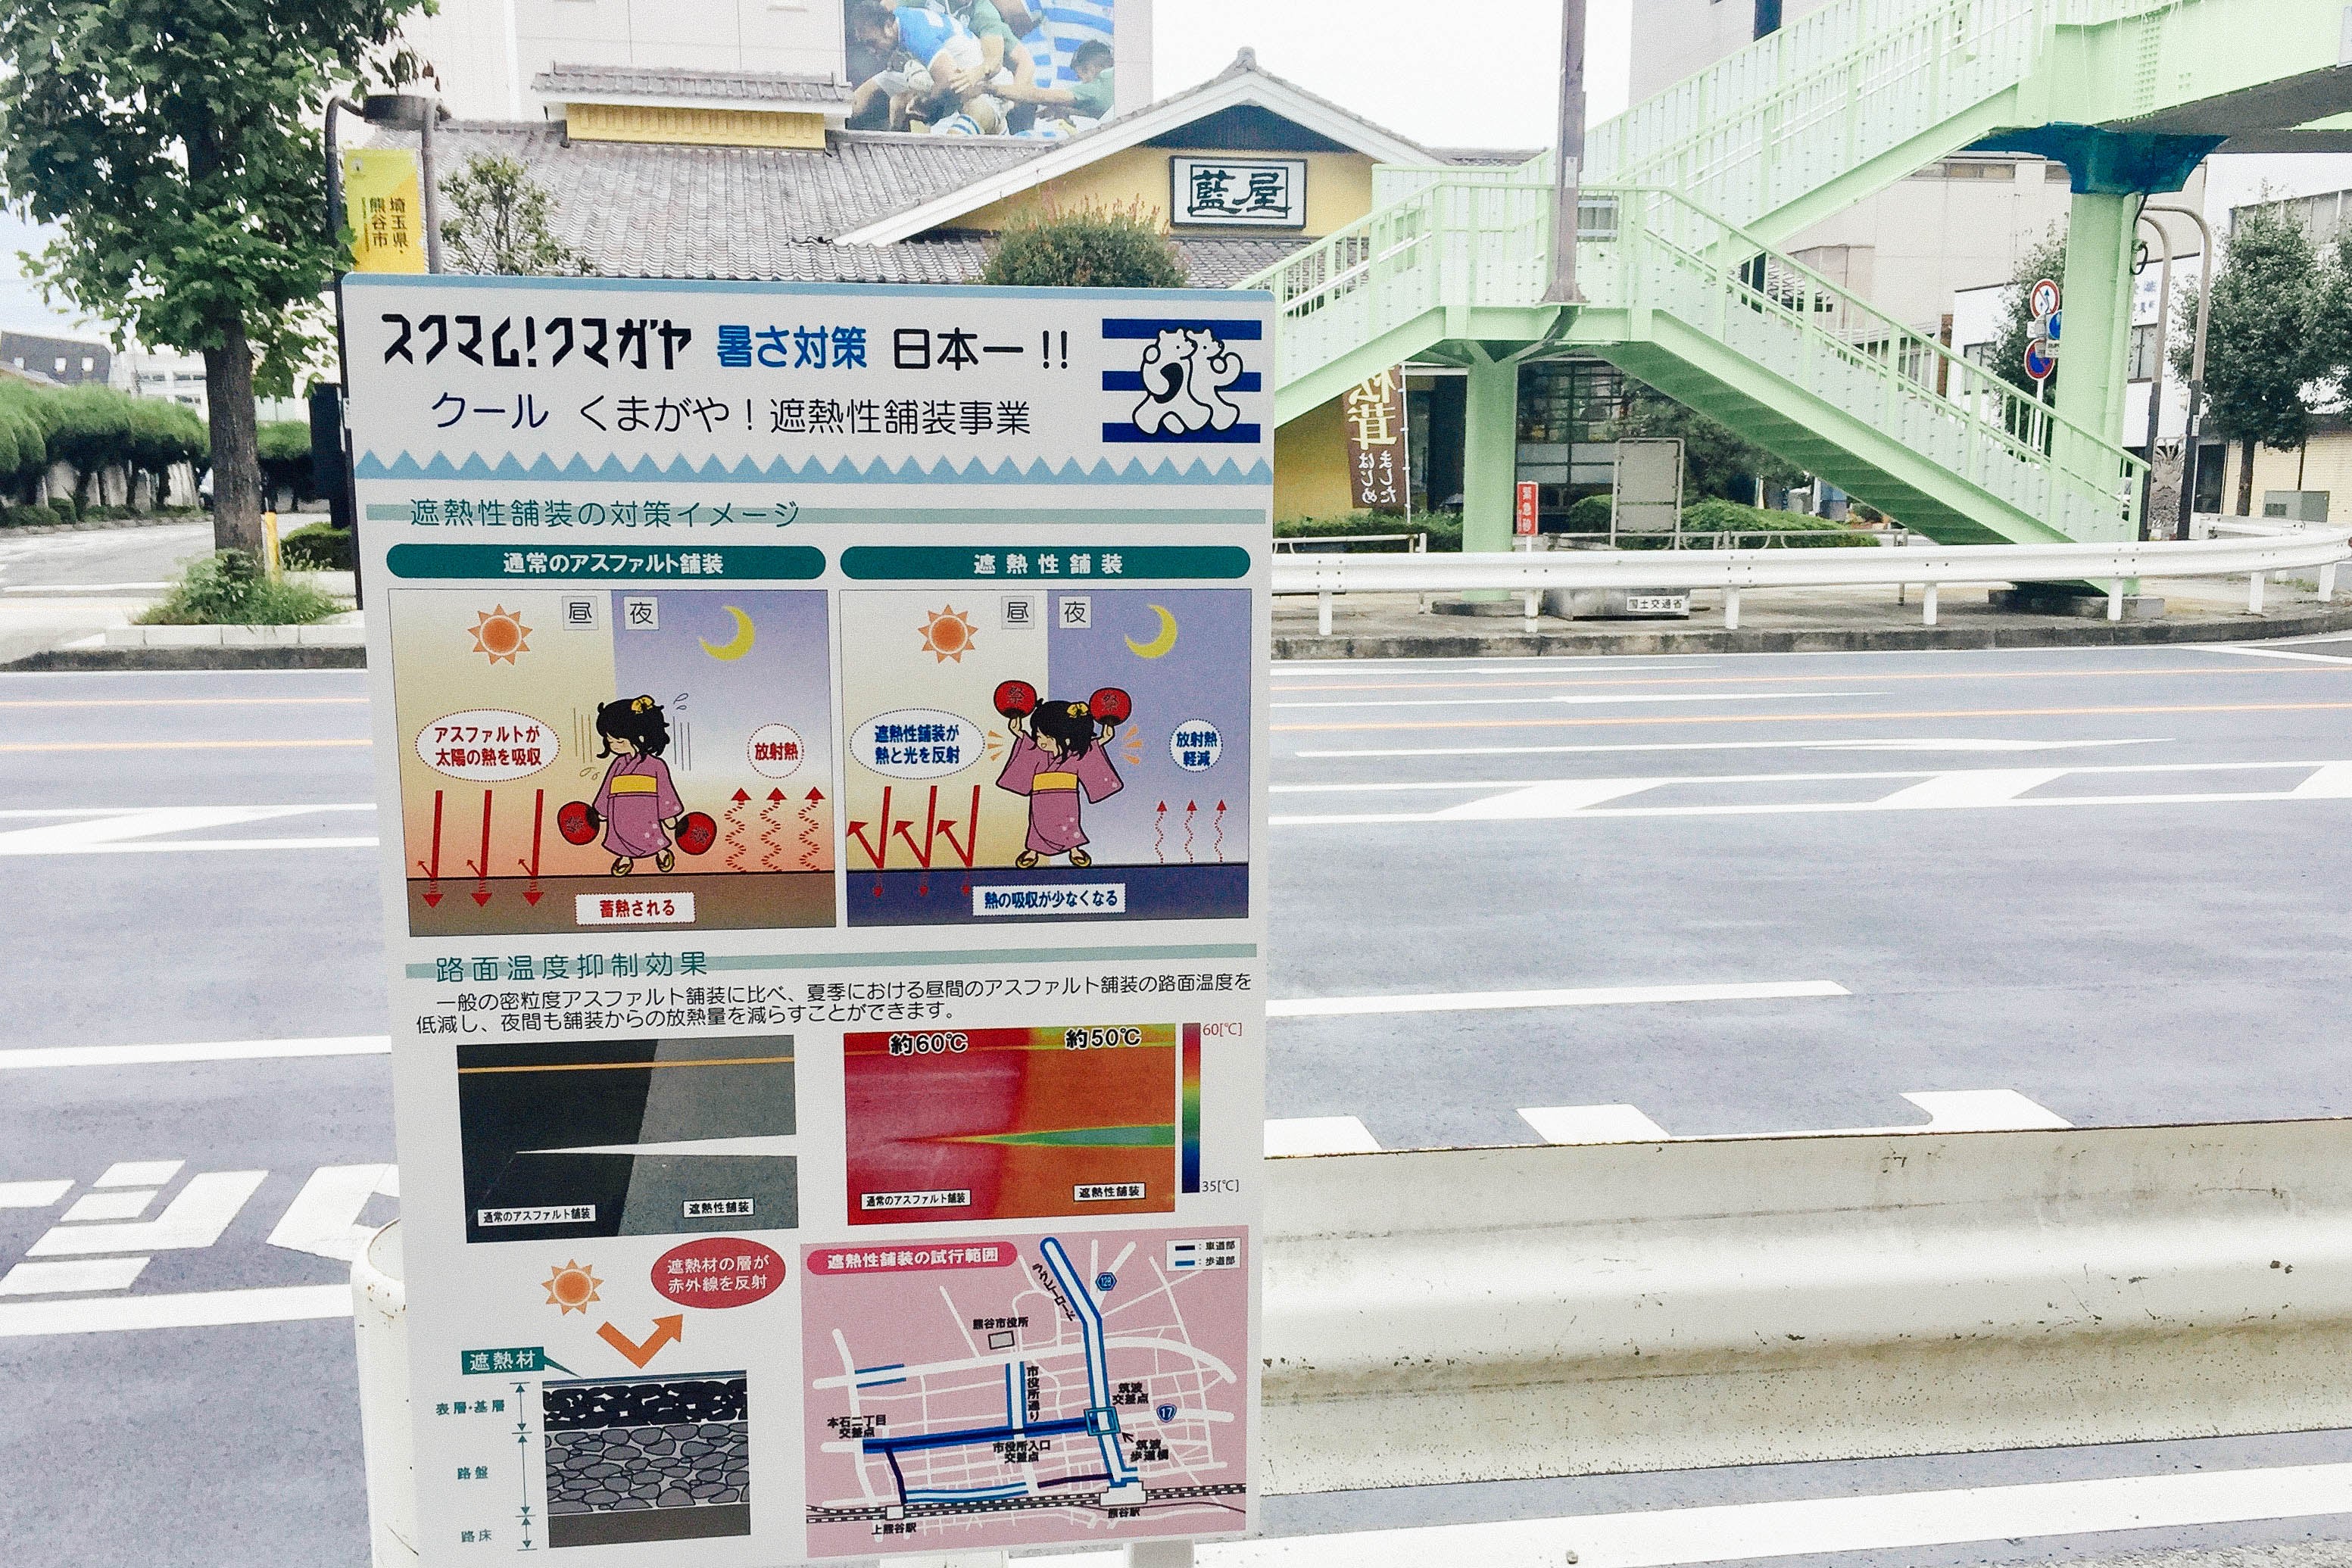 Heatstroke warning poster in Japanese beside a road